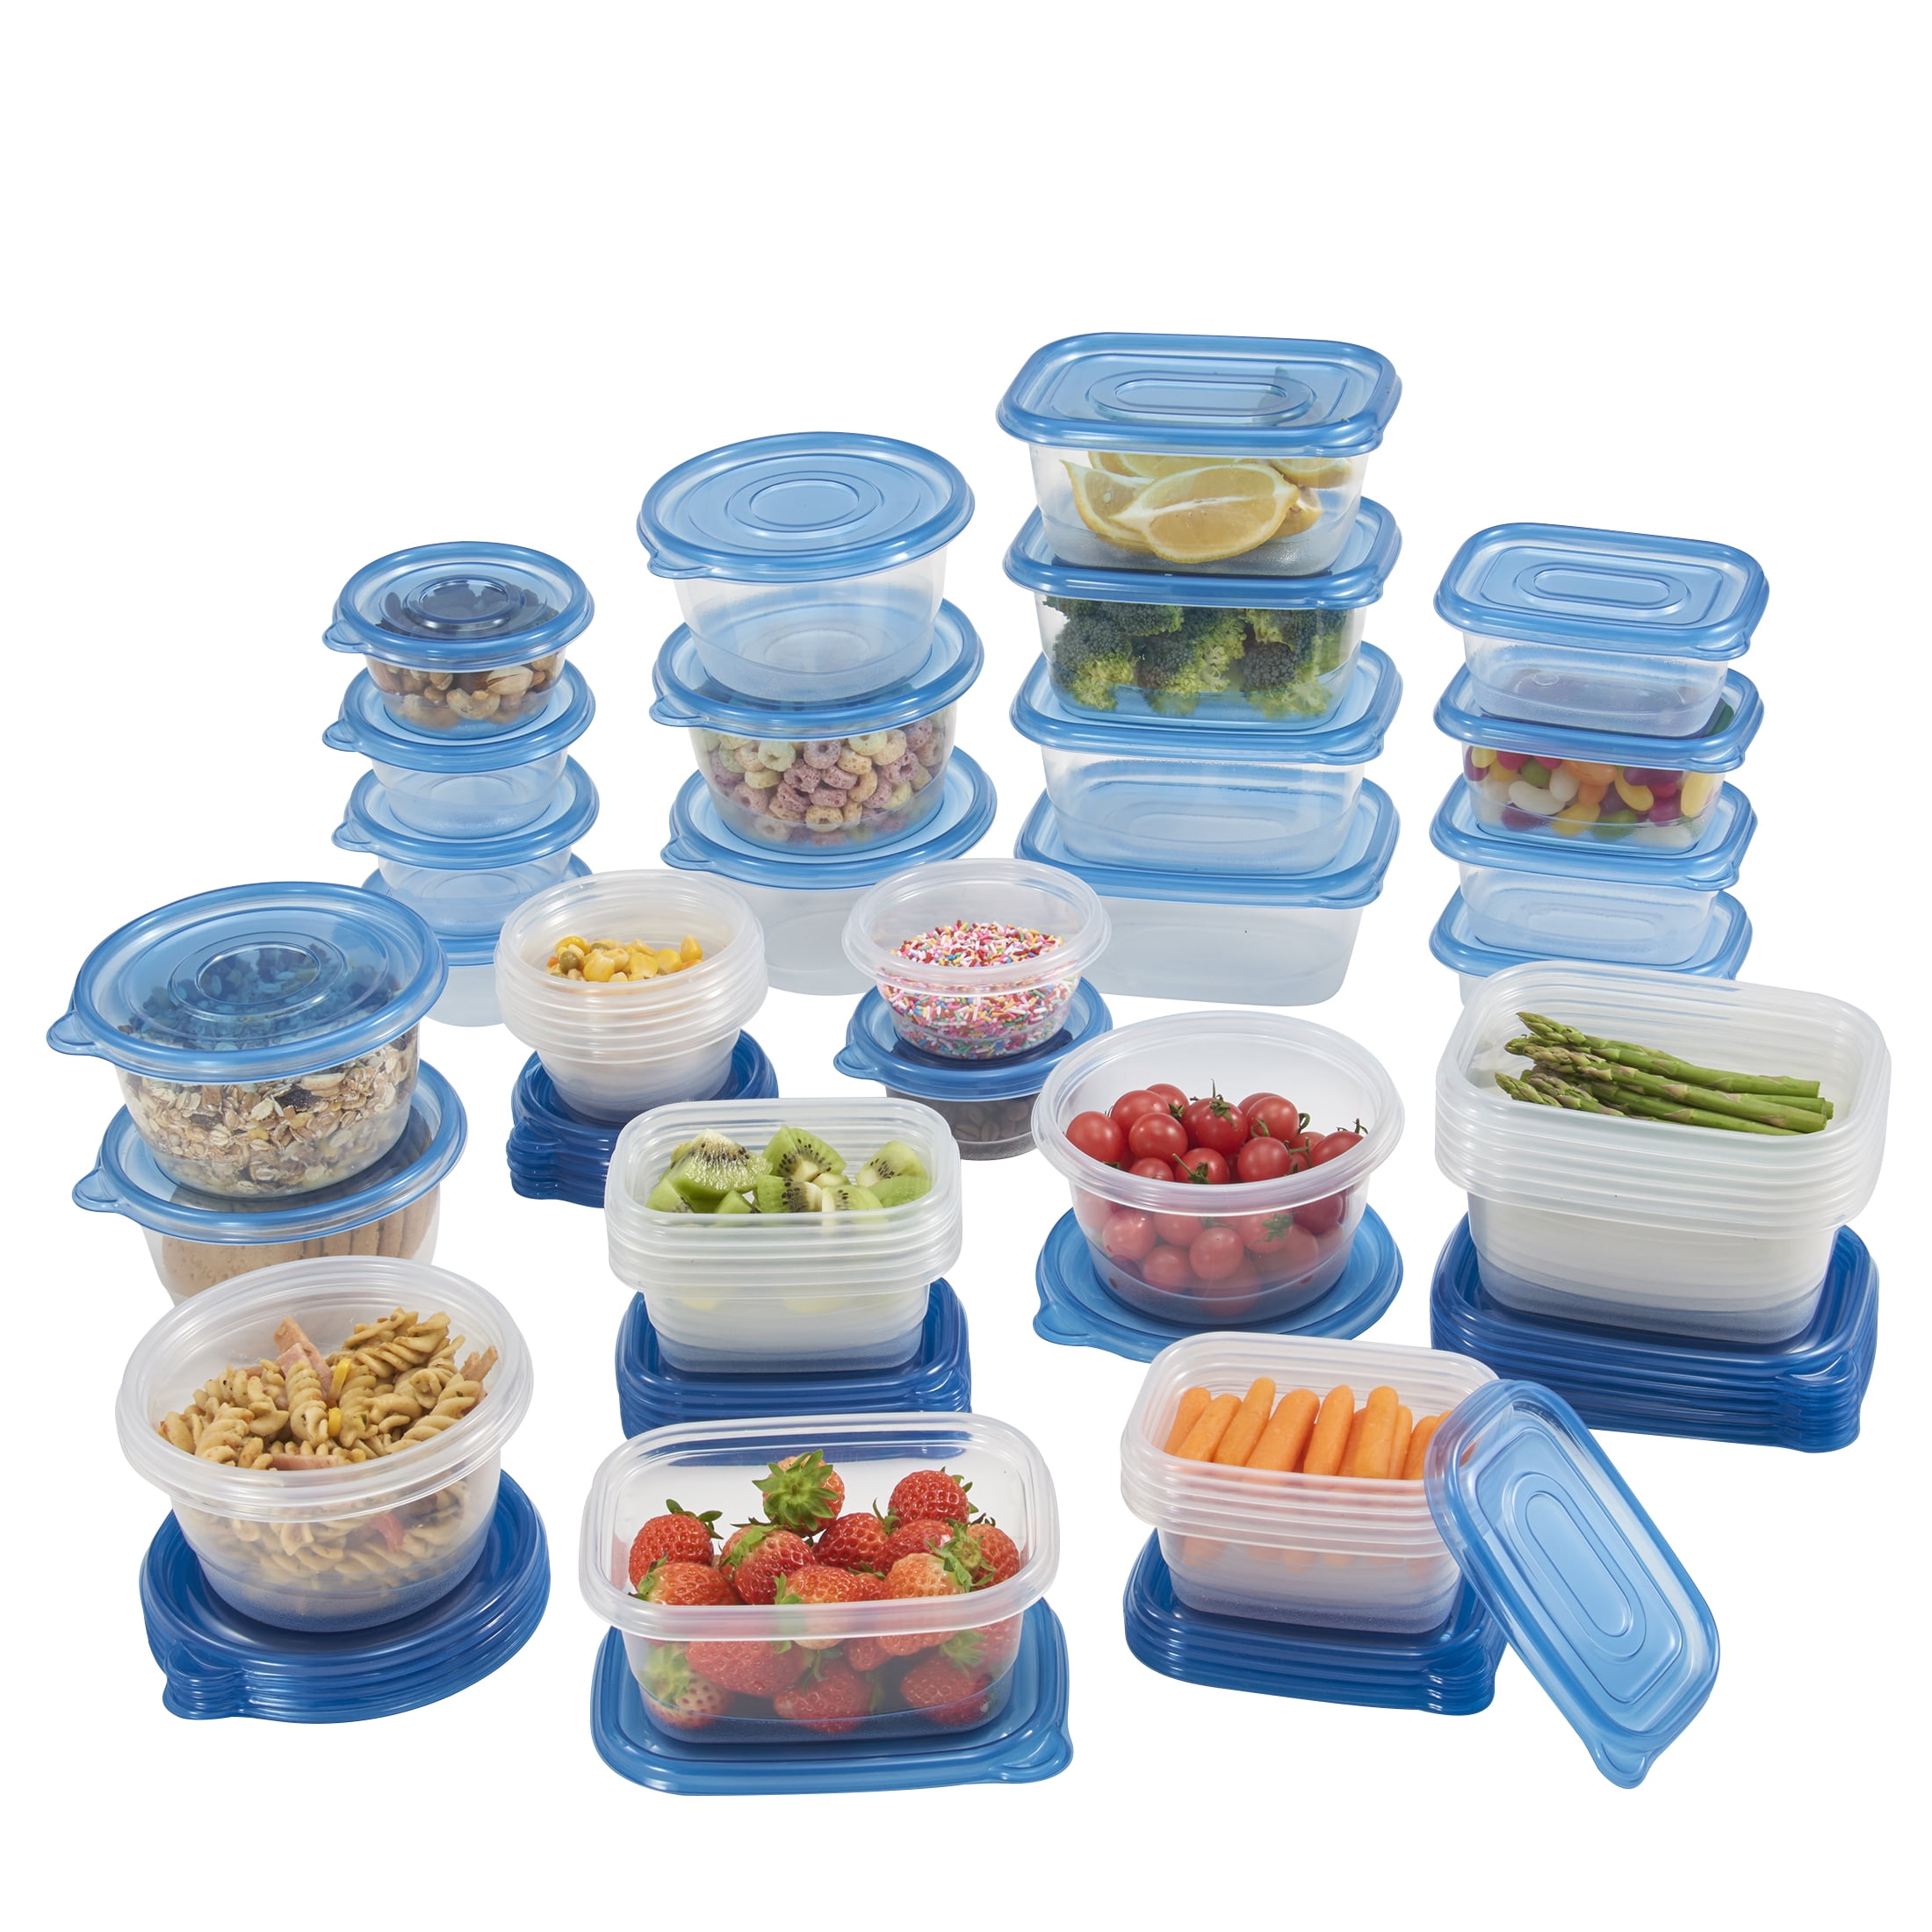 Mainstays 92 Piece Food Storage Variety Value Set, Blue Lids